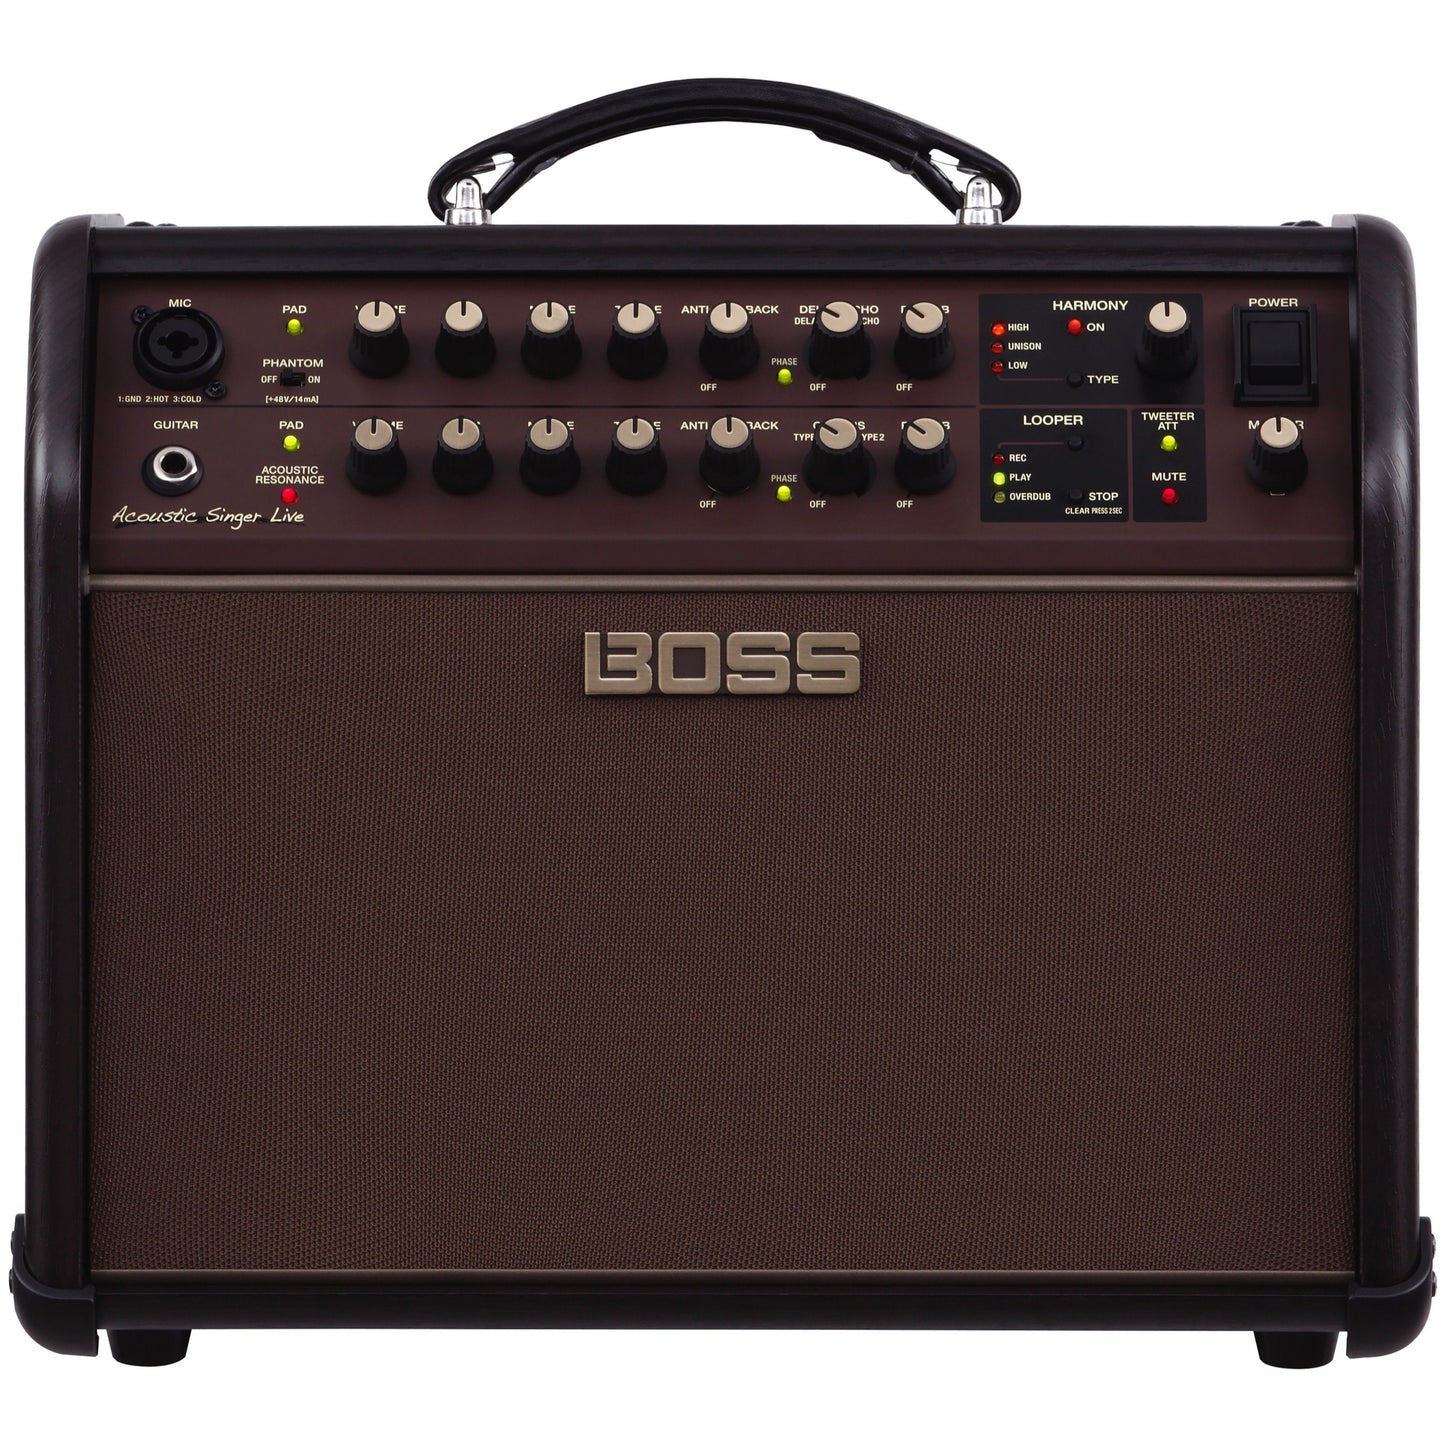 Boss Acoustic Singer Live Acoustic Guitar Amplifier